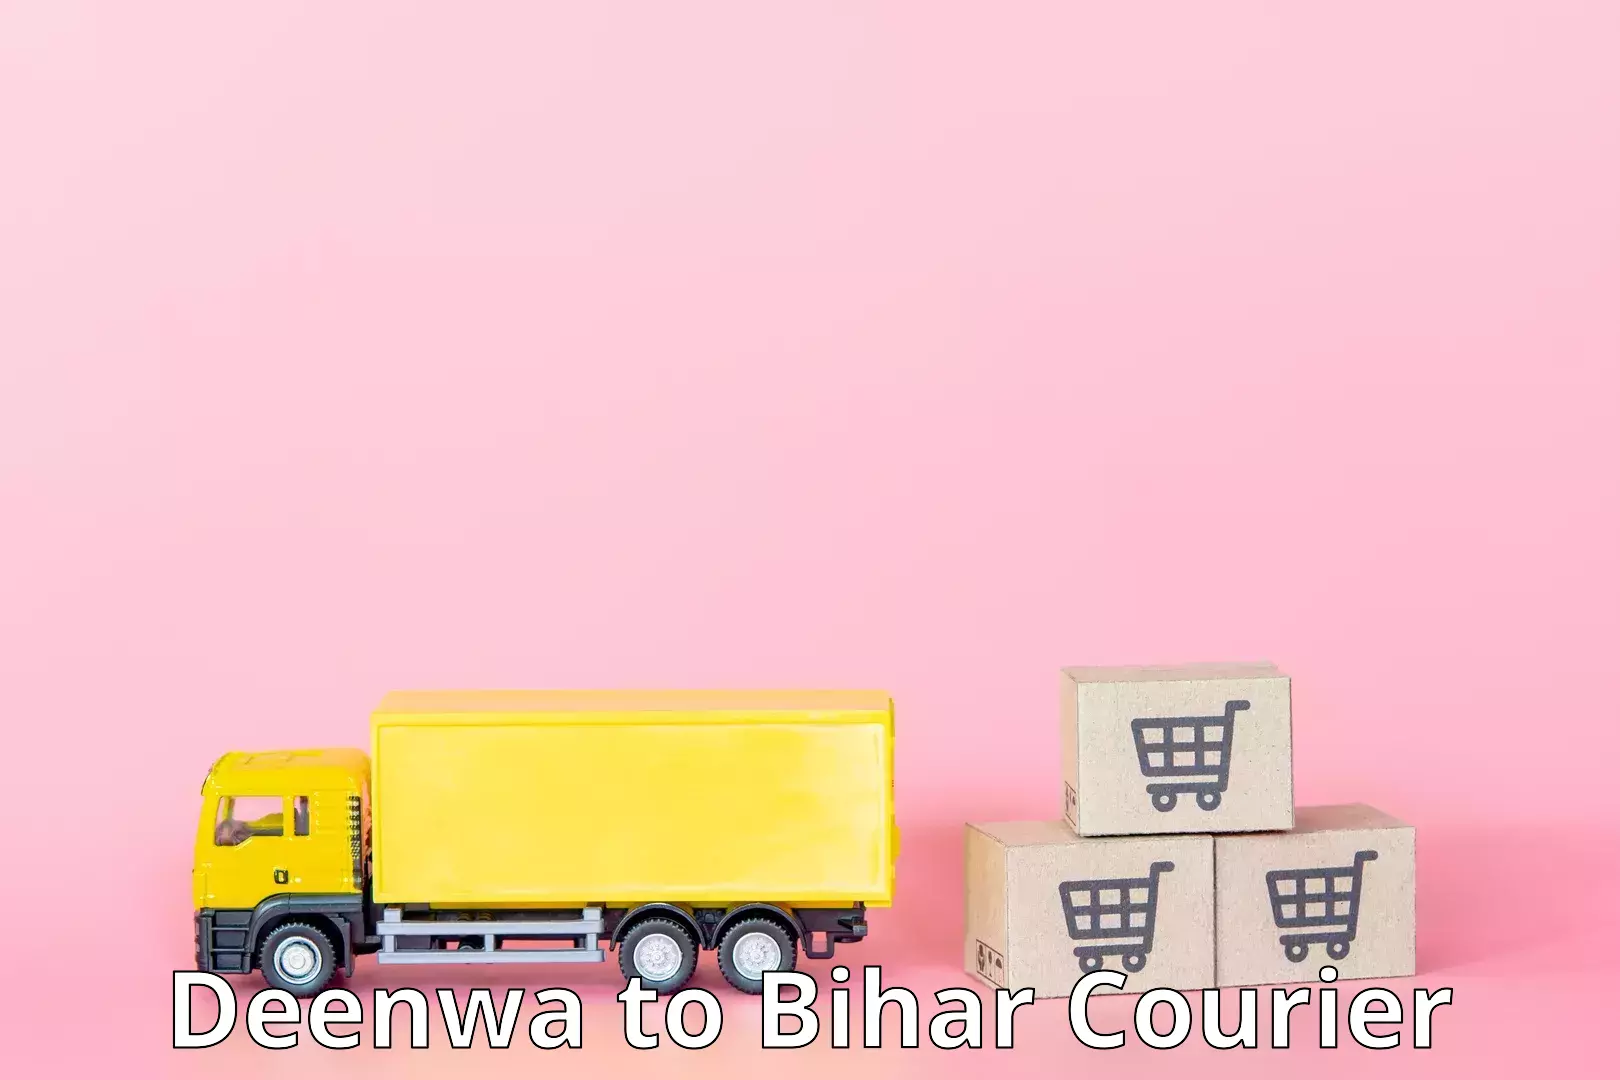 Customer-centric shipping Deenwa to Saharsa